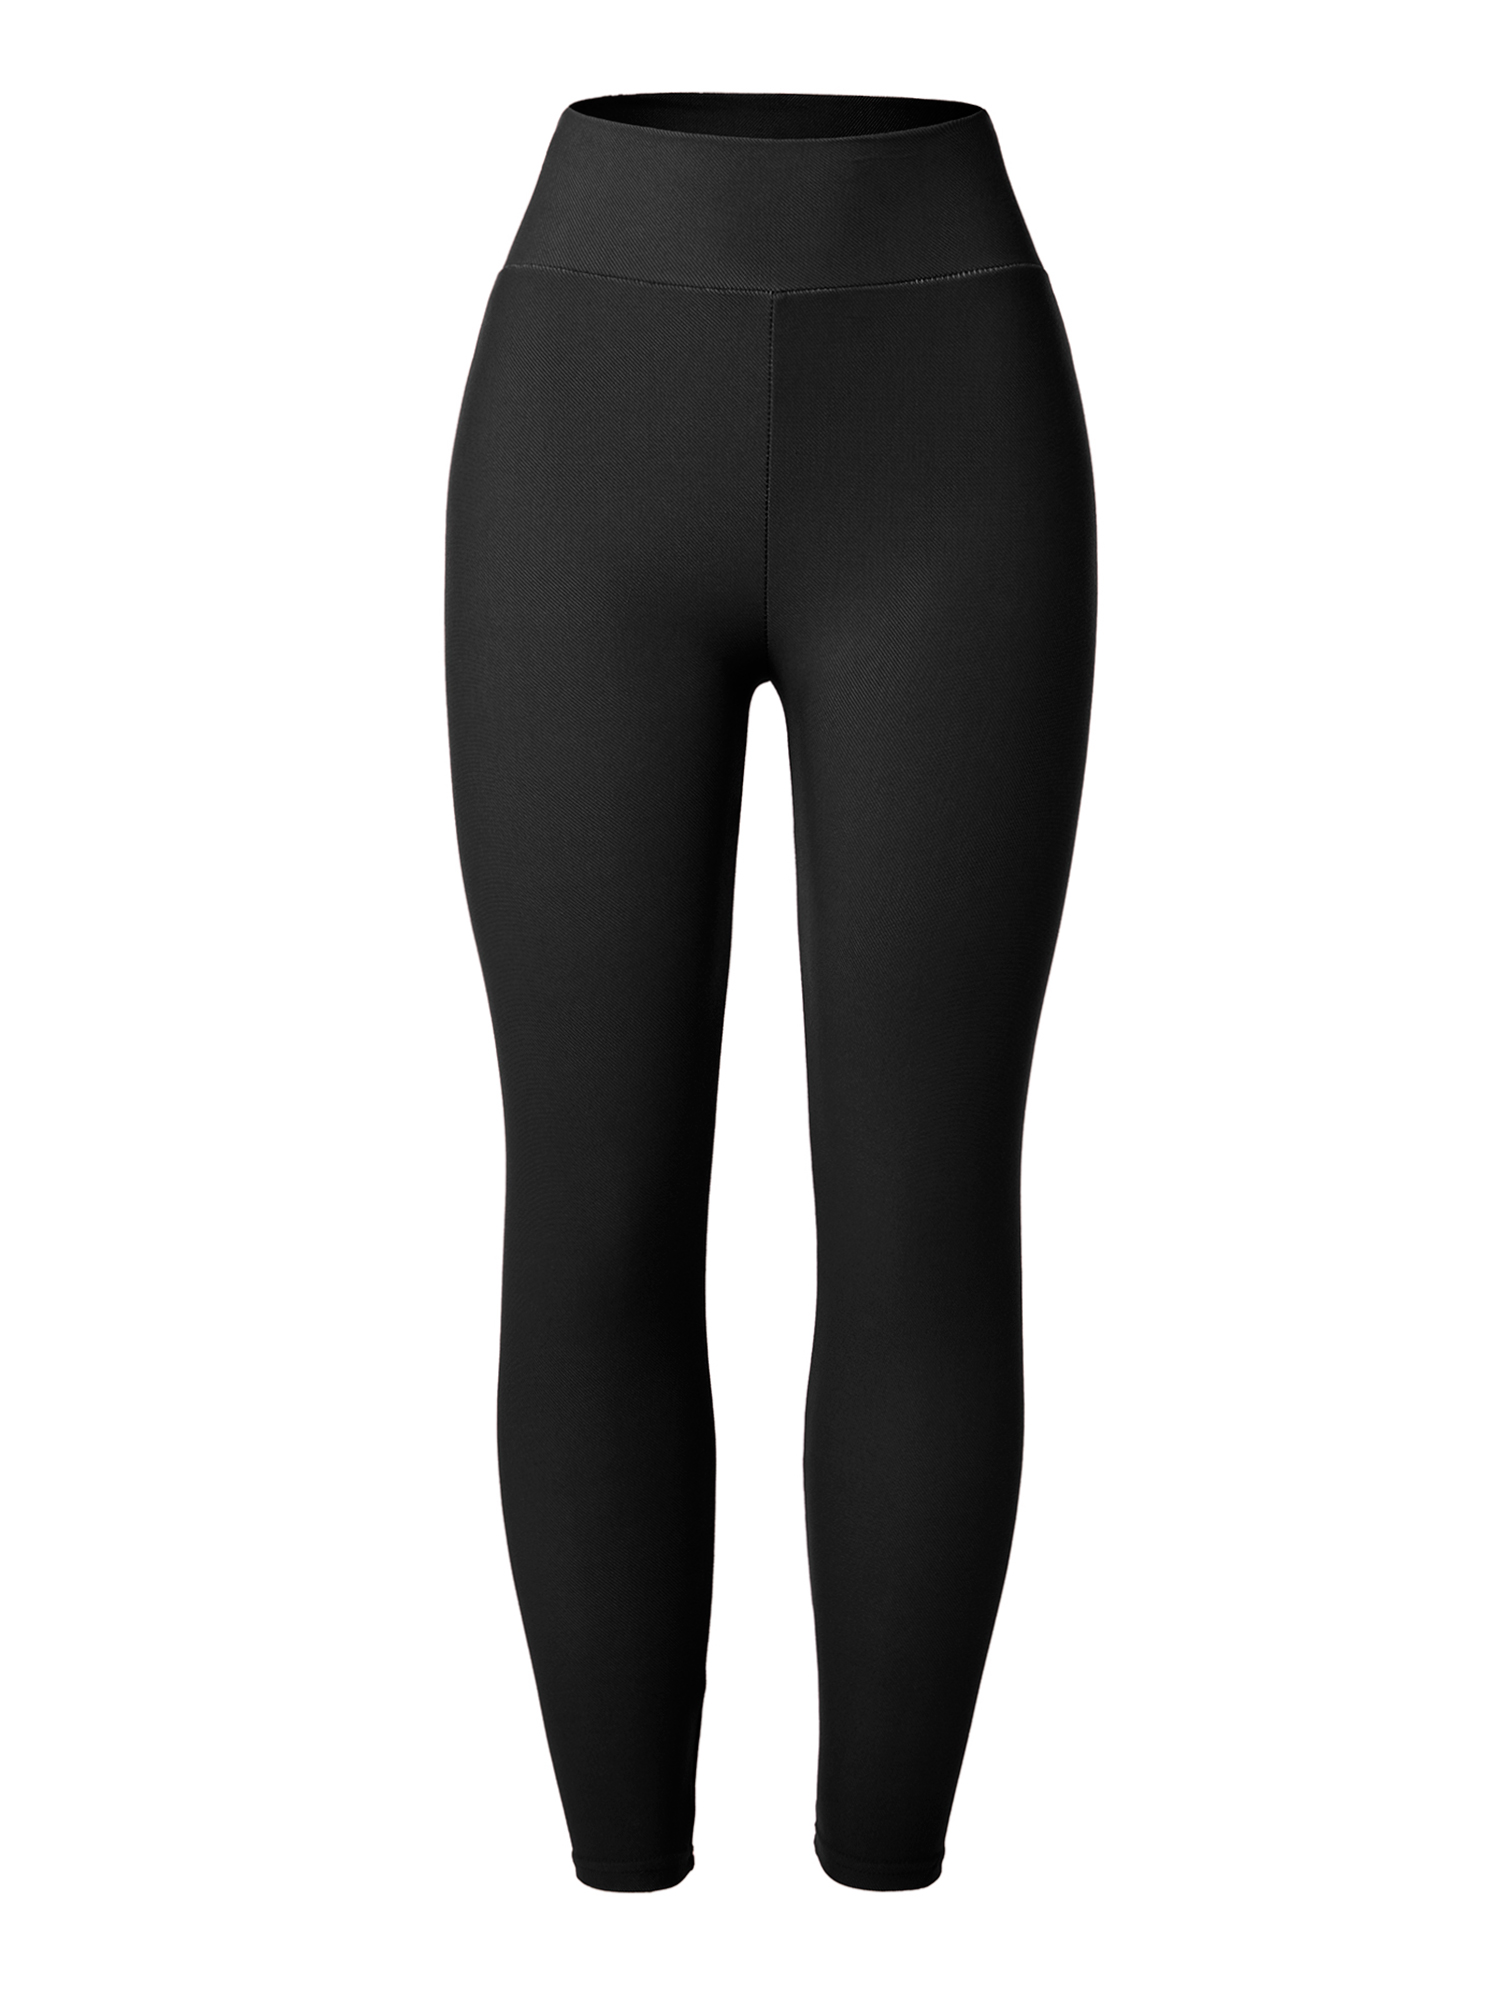 LELINTA Women's High Waist Denim Leggings High Stretchy Full Length Basic Skinny Pants Black/Navy/Red - image 1 of 8